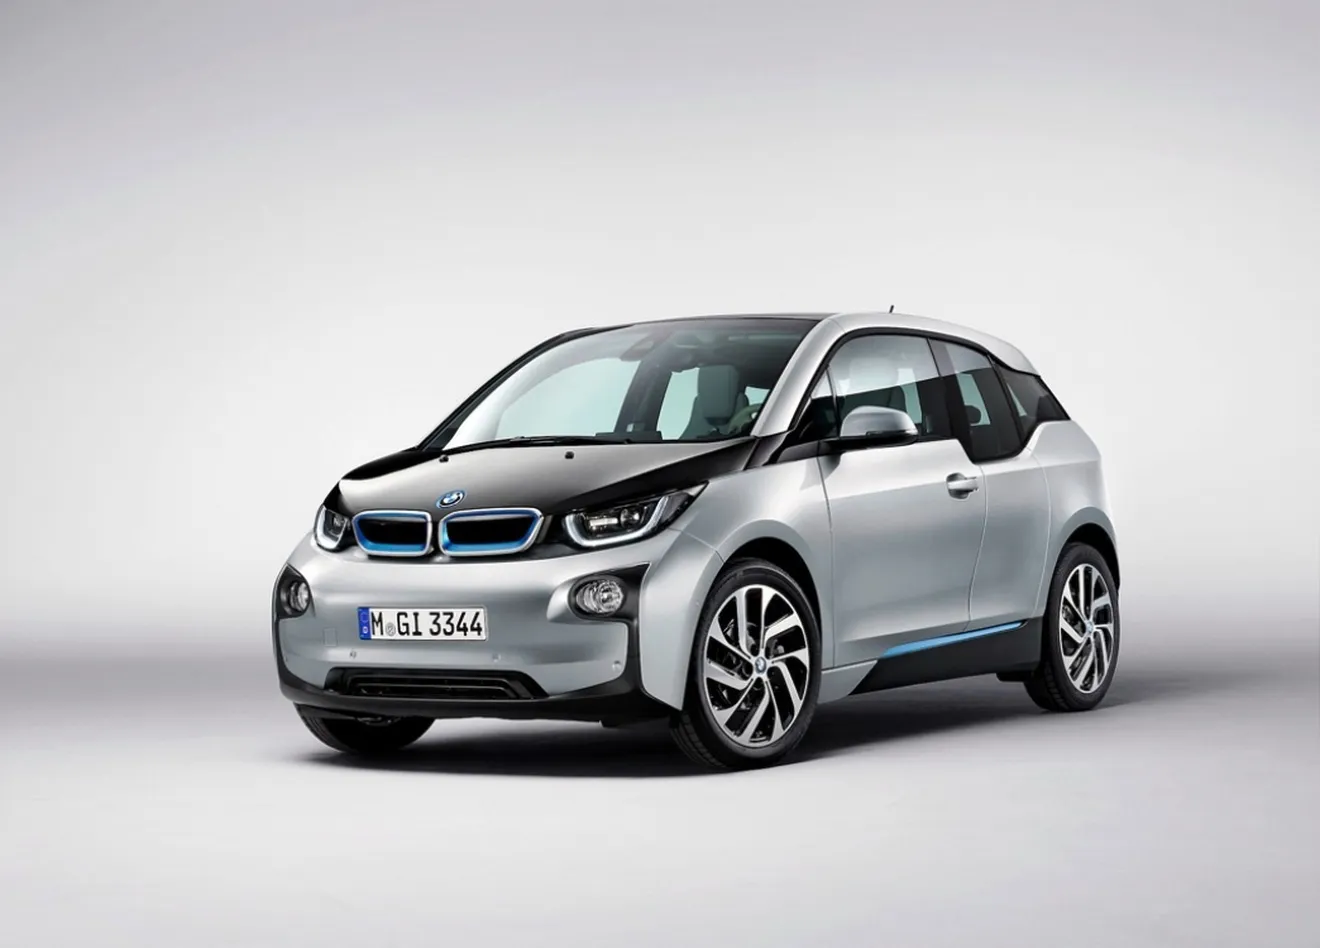 Noruega - Marzo 2014: El BMW i3 entra en el Top 10